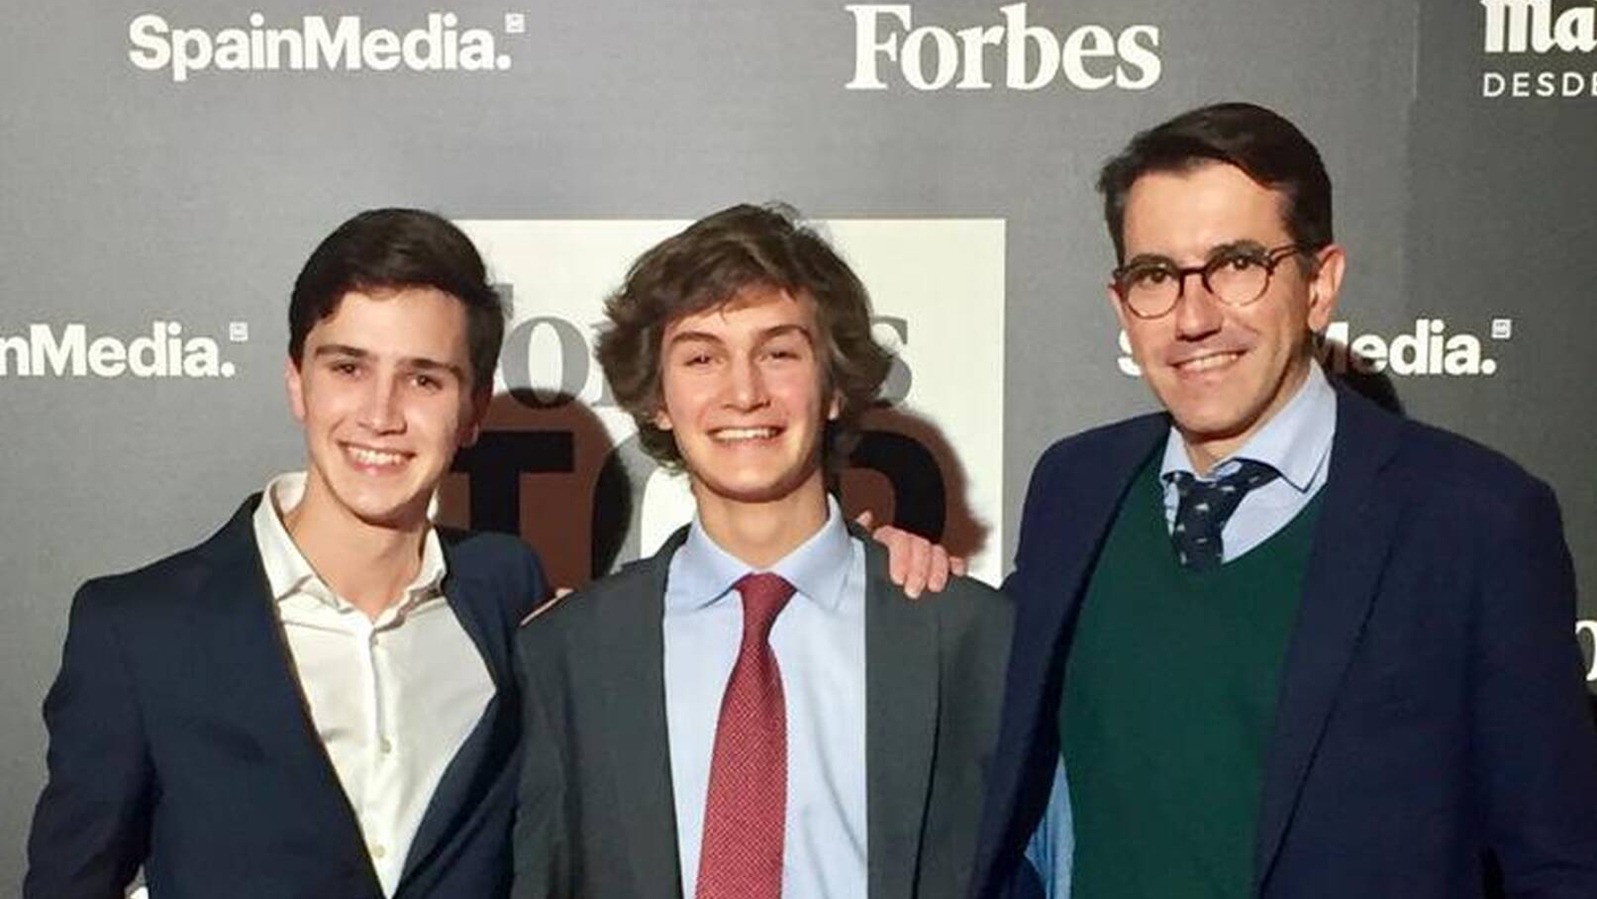 Два 18-летних испанца попали в один из списков журнала Forbes